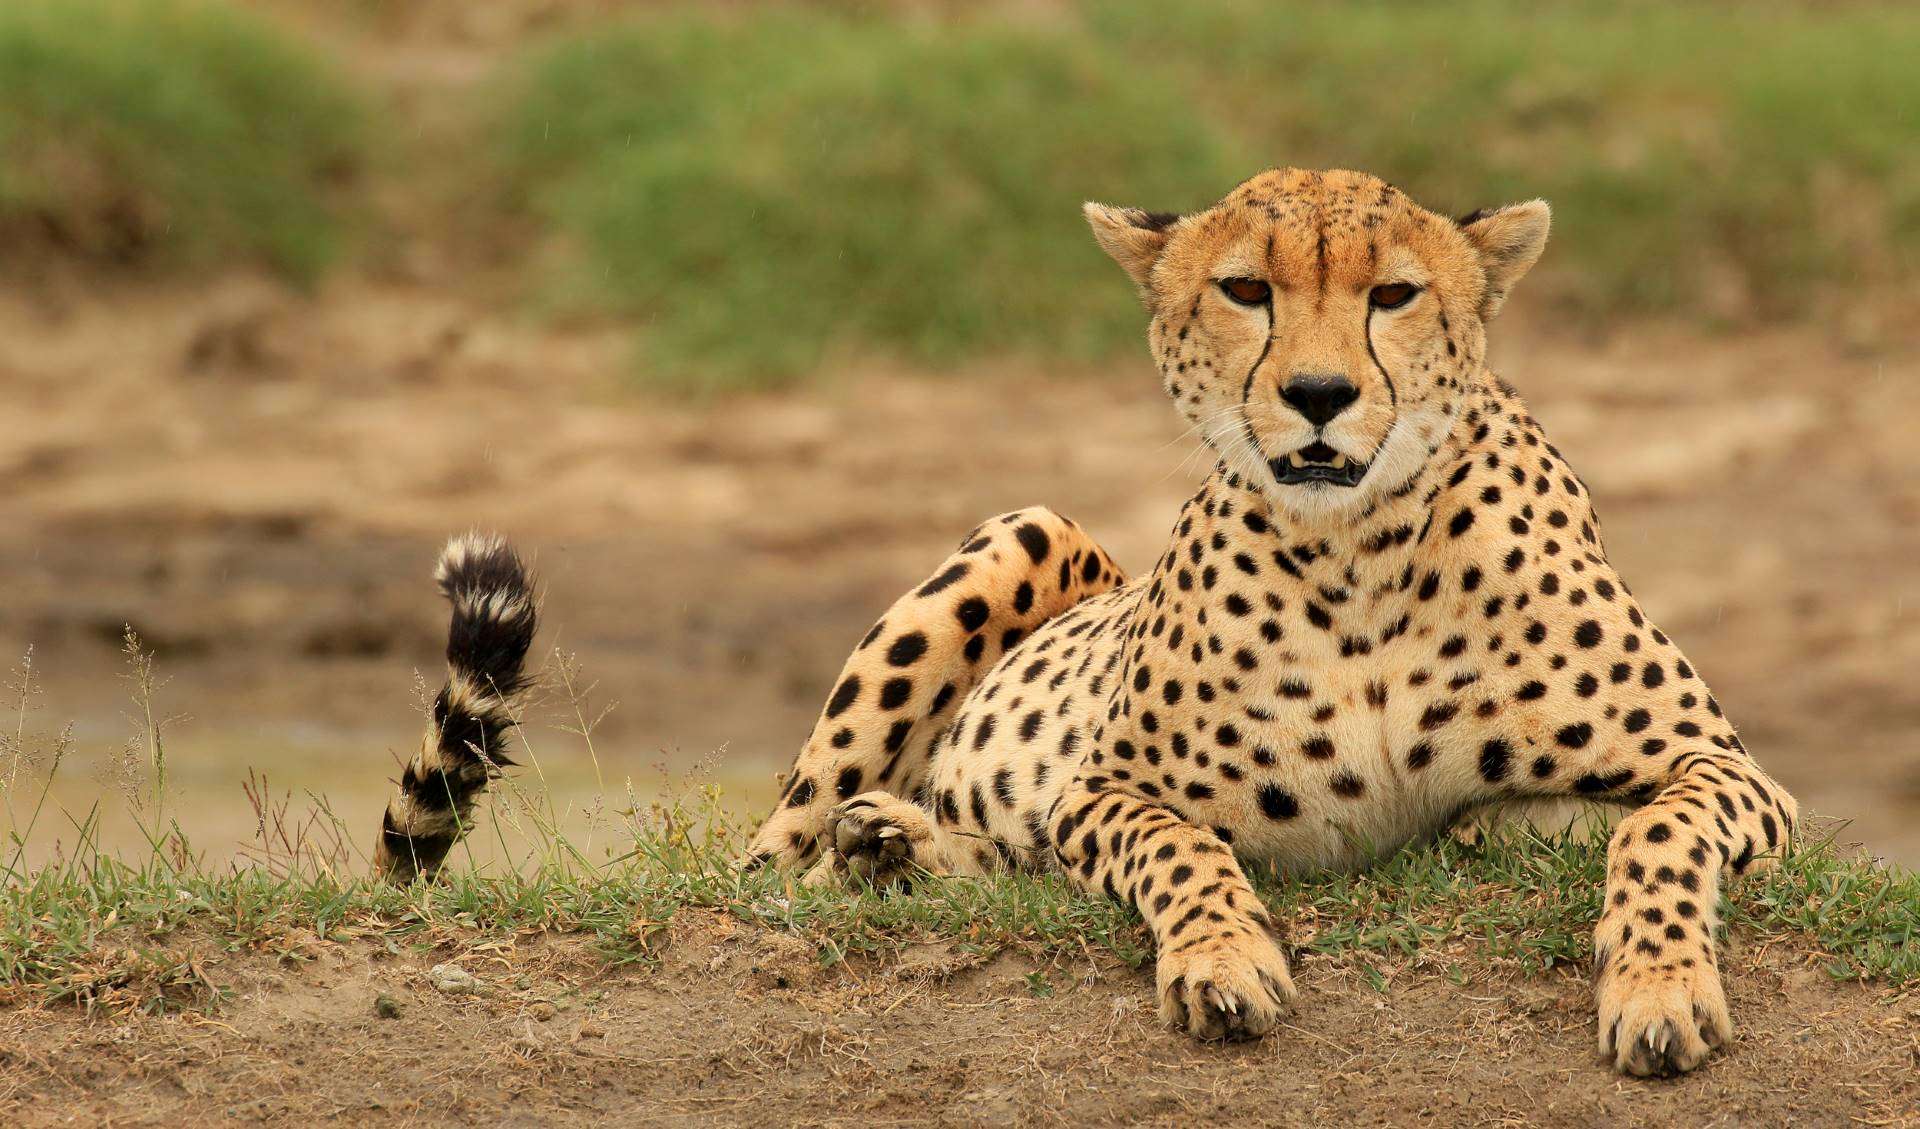 Cheetah in Tanzania by Eric Rock